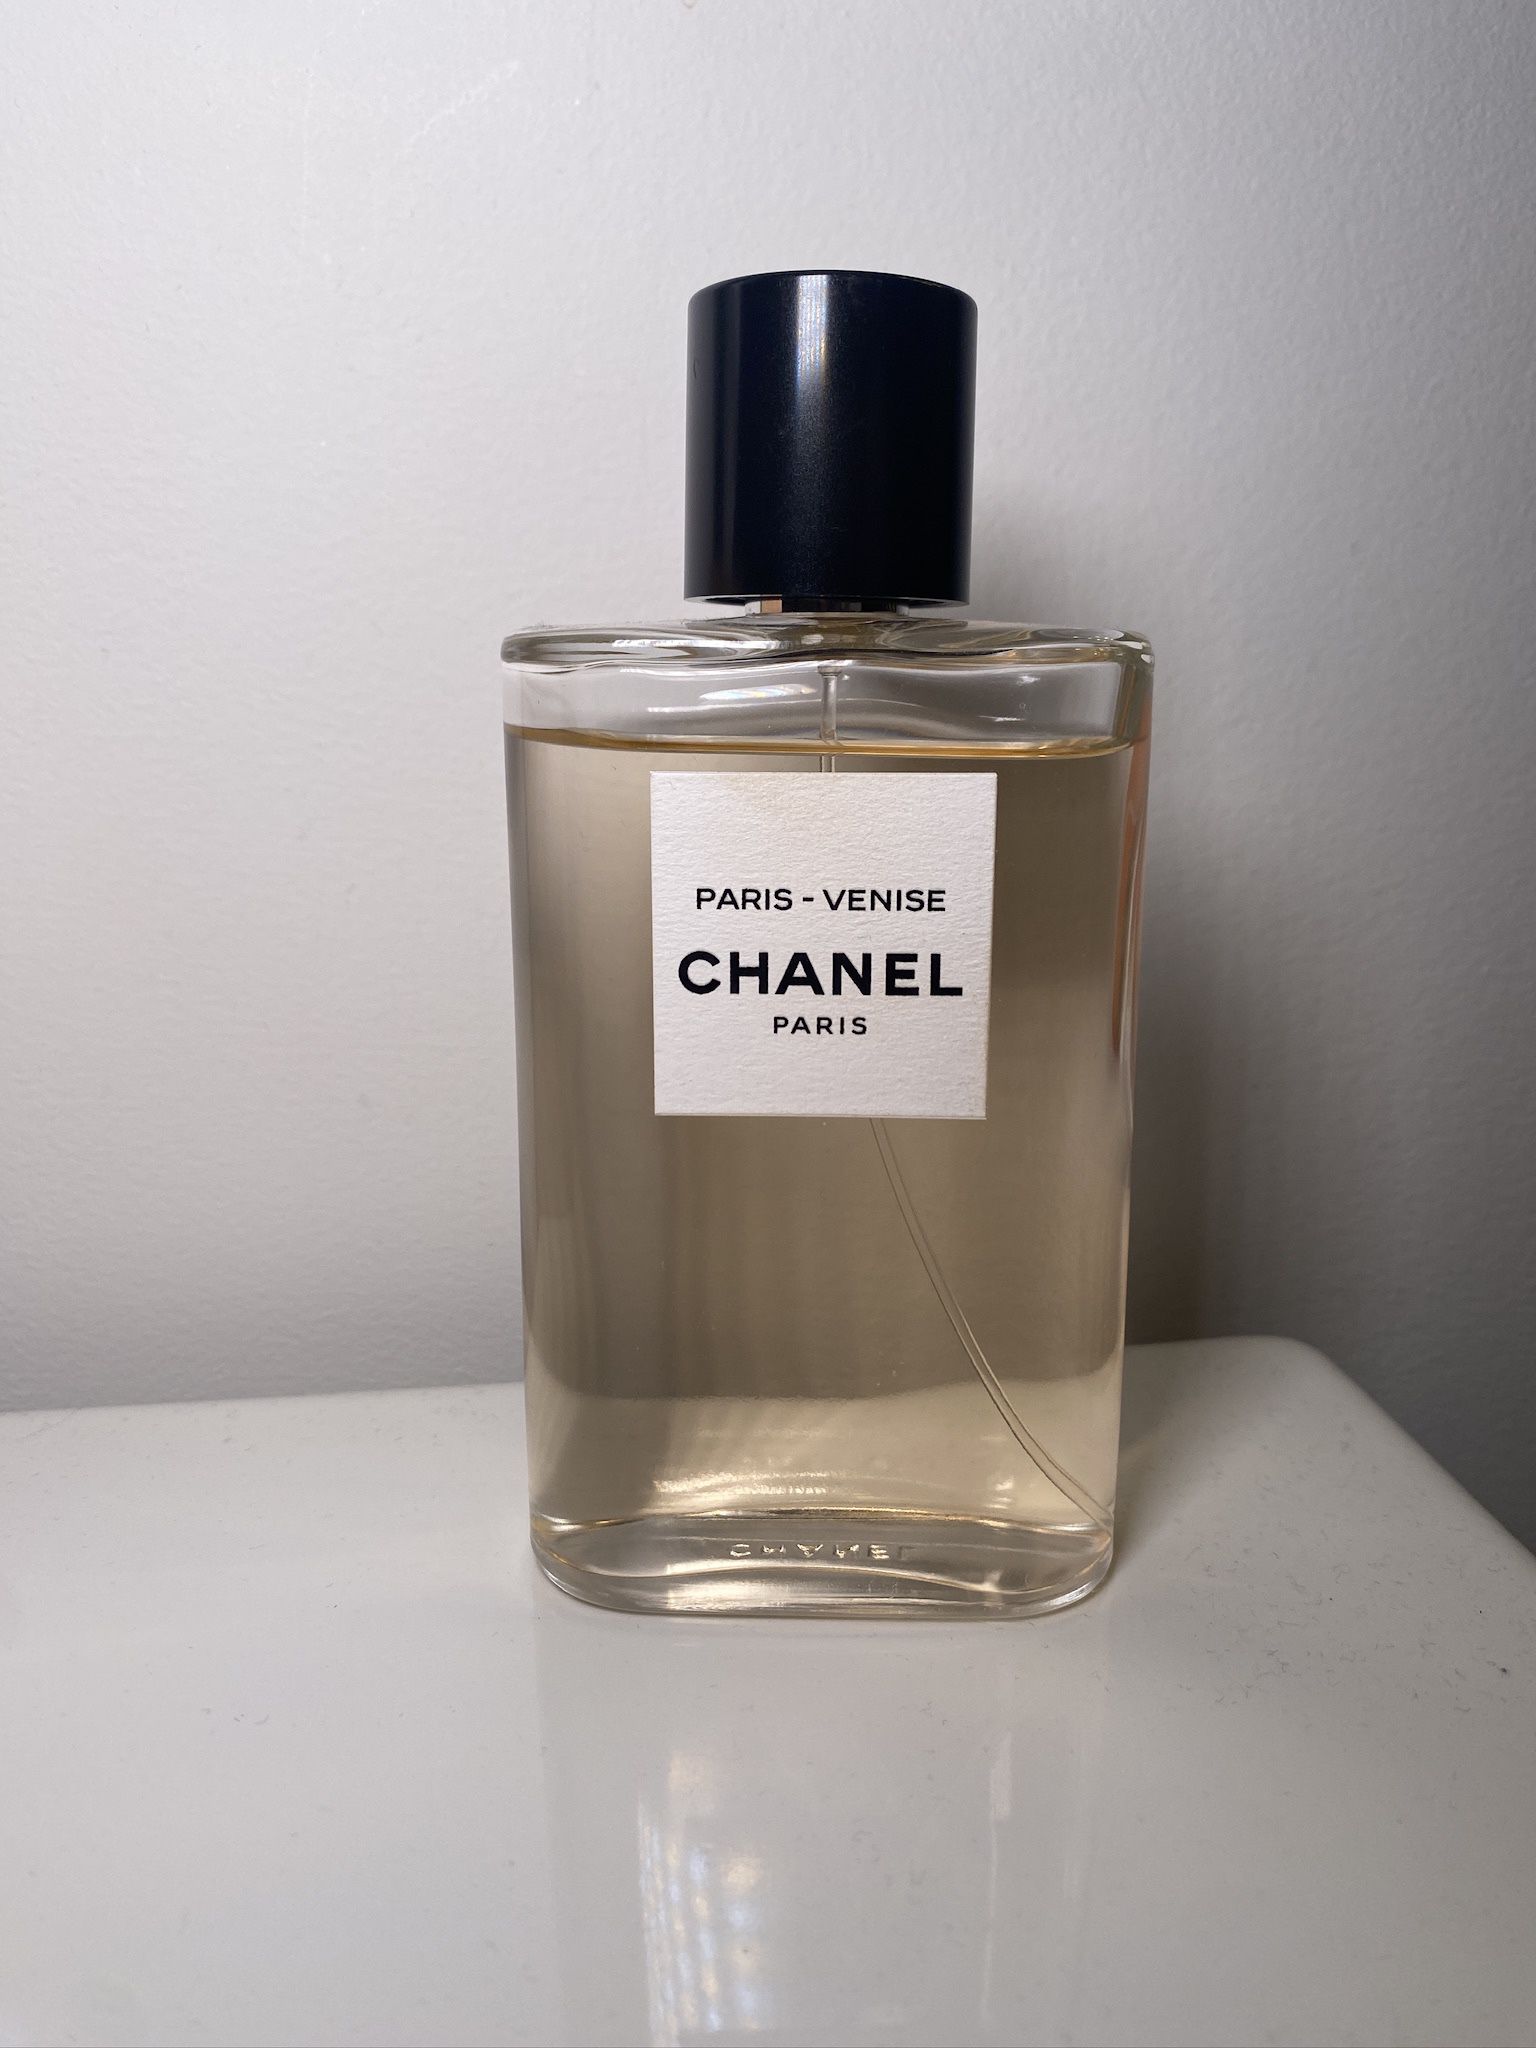 Chanel Paris-Venise Perfume 